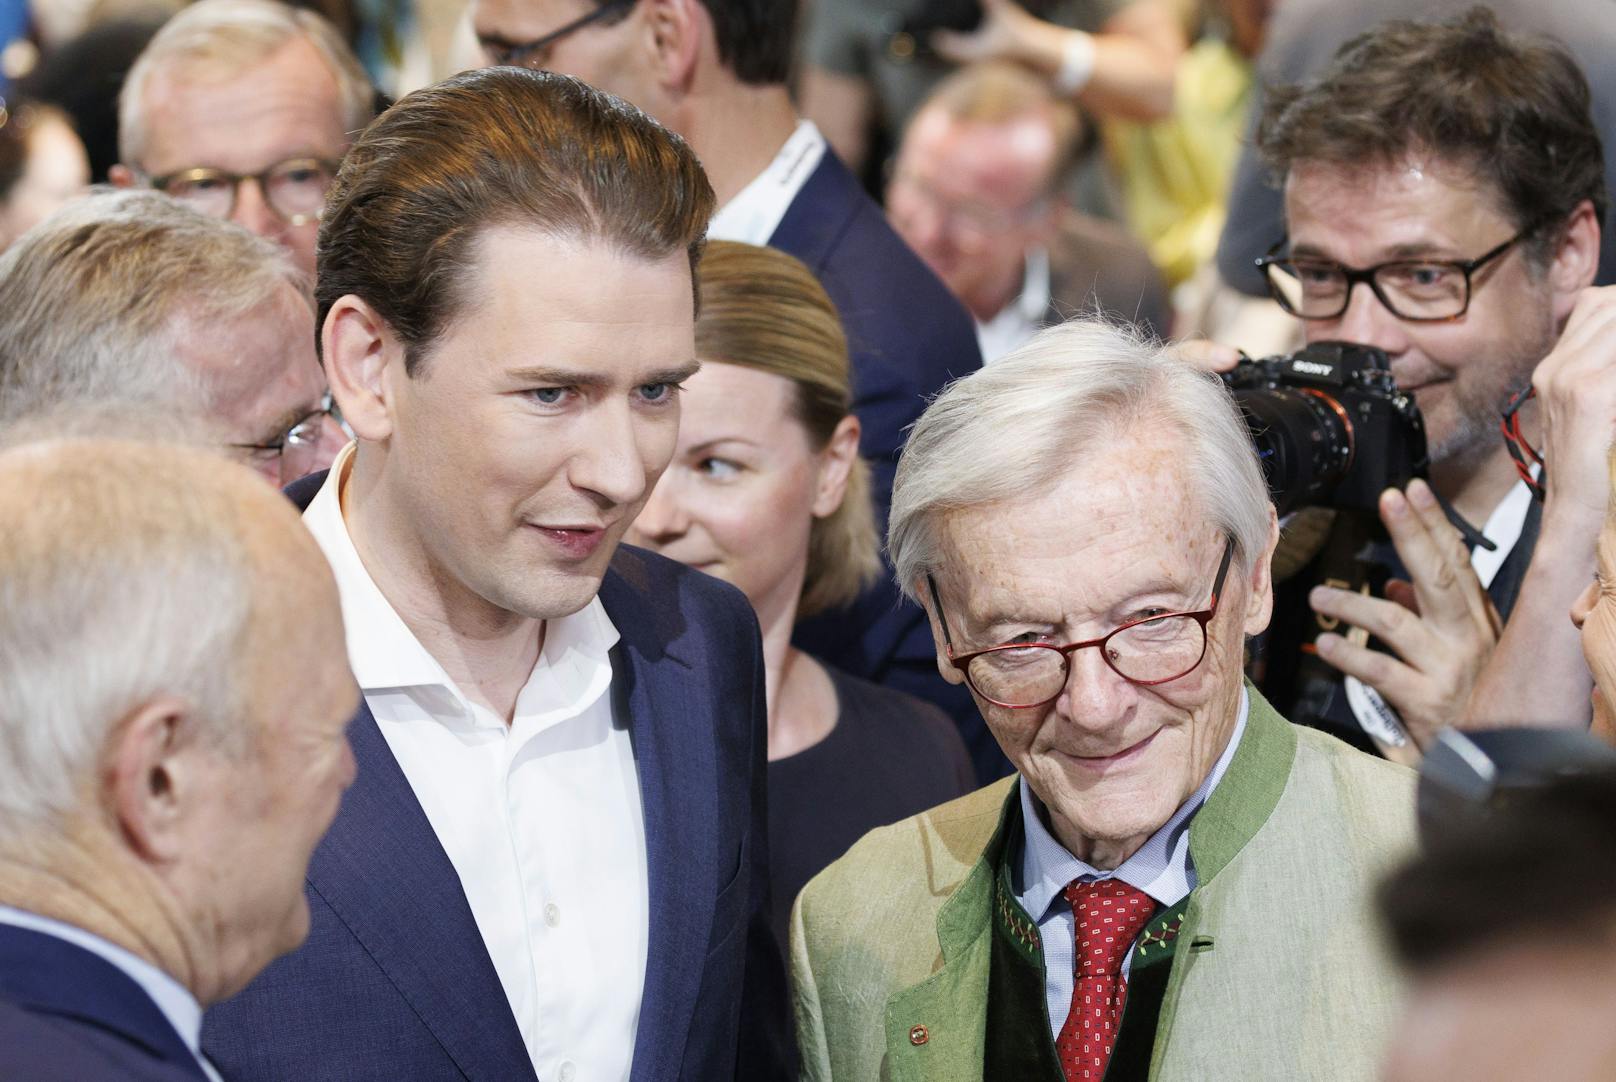 Die beiden früheren Kanzler Sebastian Kurz und Wolfgang Schüssel am Parteitag der ÖVP in Graz. 